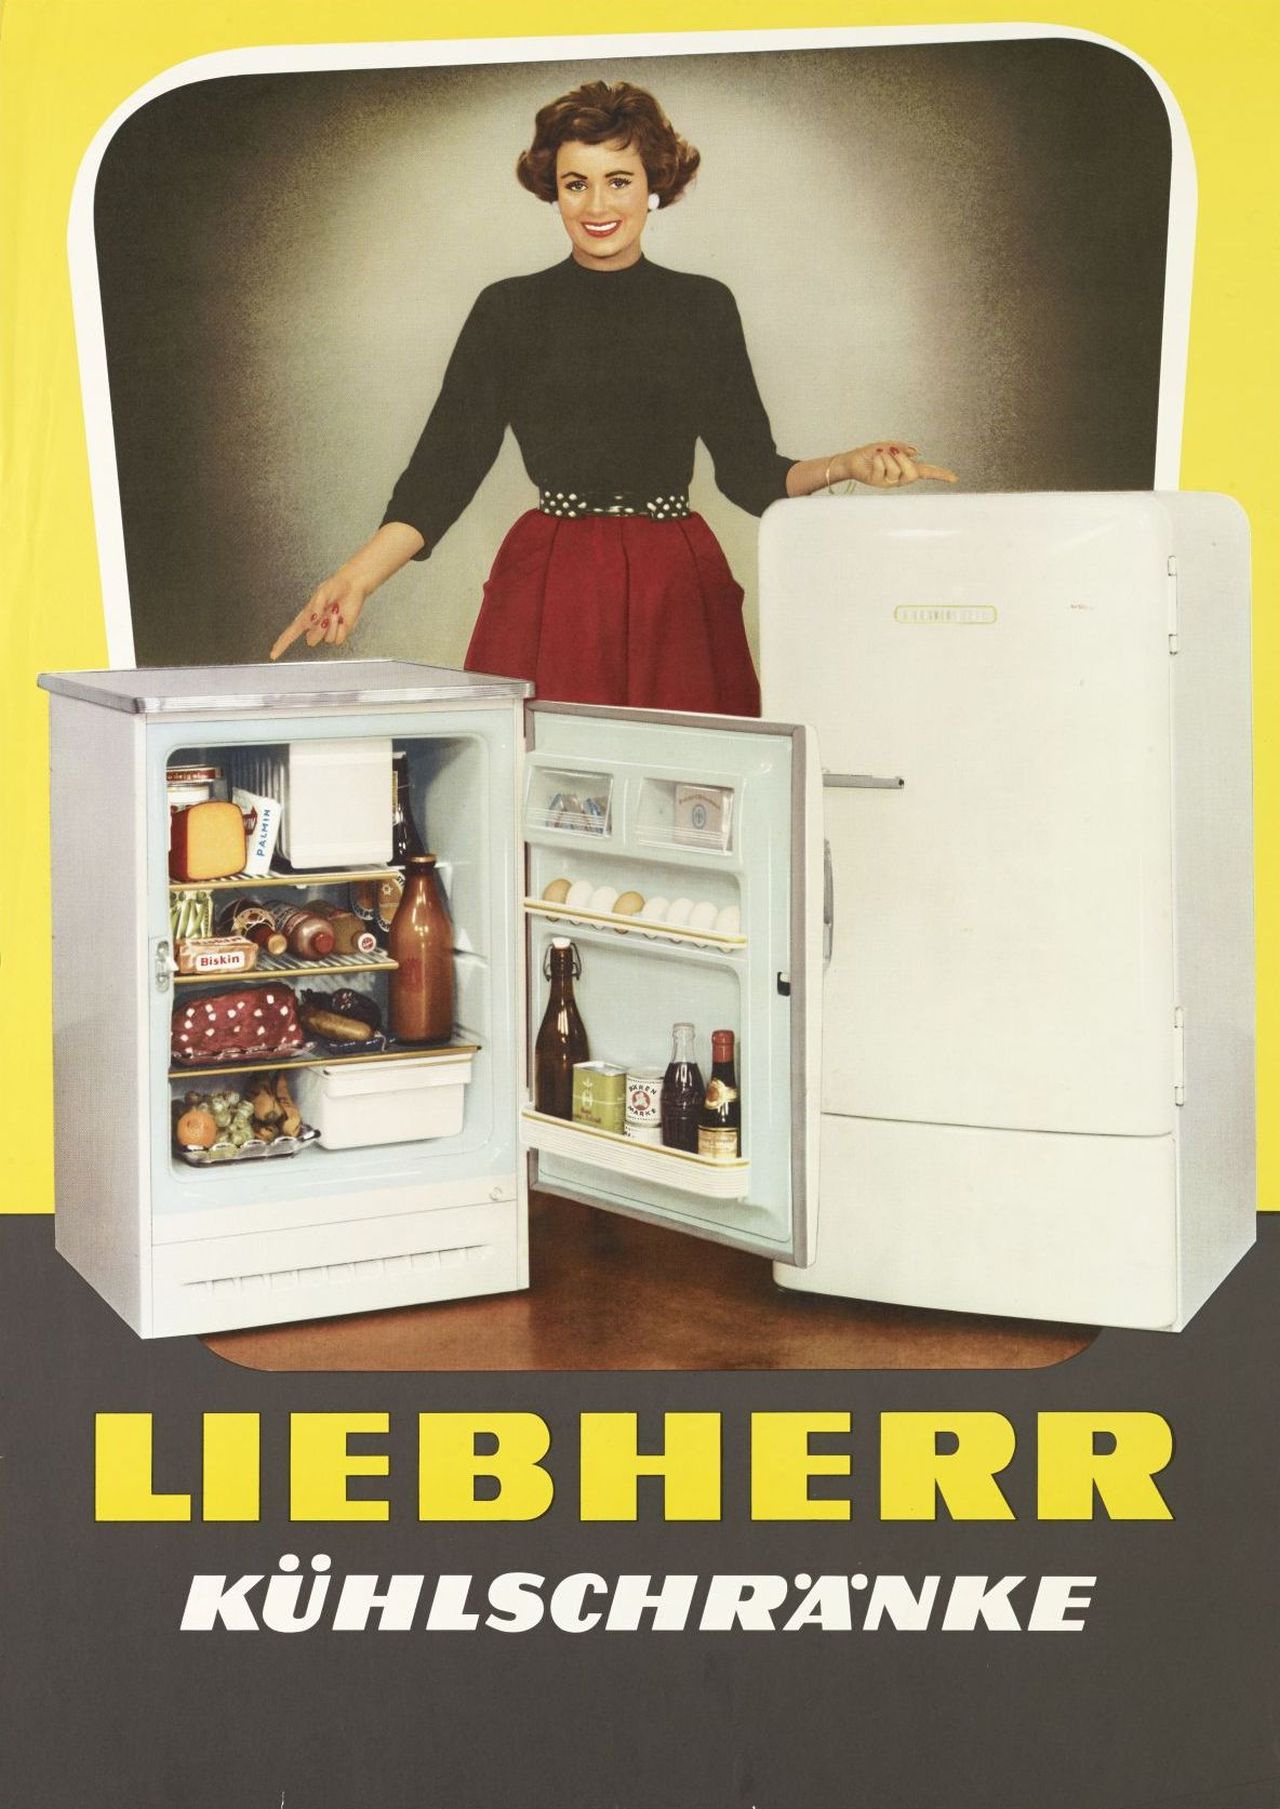 Die farbige Zeichnung zeigt eine junge Frau, die hinter zwei verschiedenen Liebherr-Kühlschrank-Modellen steht. Das linke ist in geöffnetem Zustand, das rechte in geschlossenem gezeigt. Darunter erscheint der Werbetext (